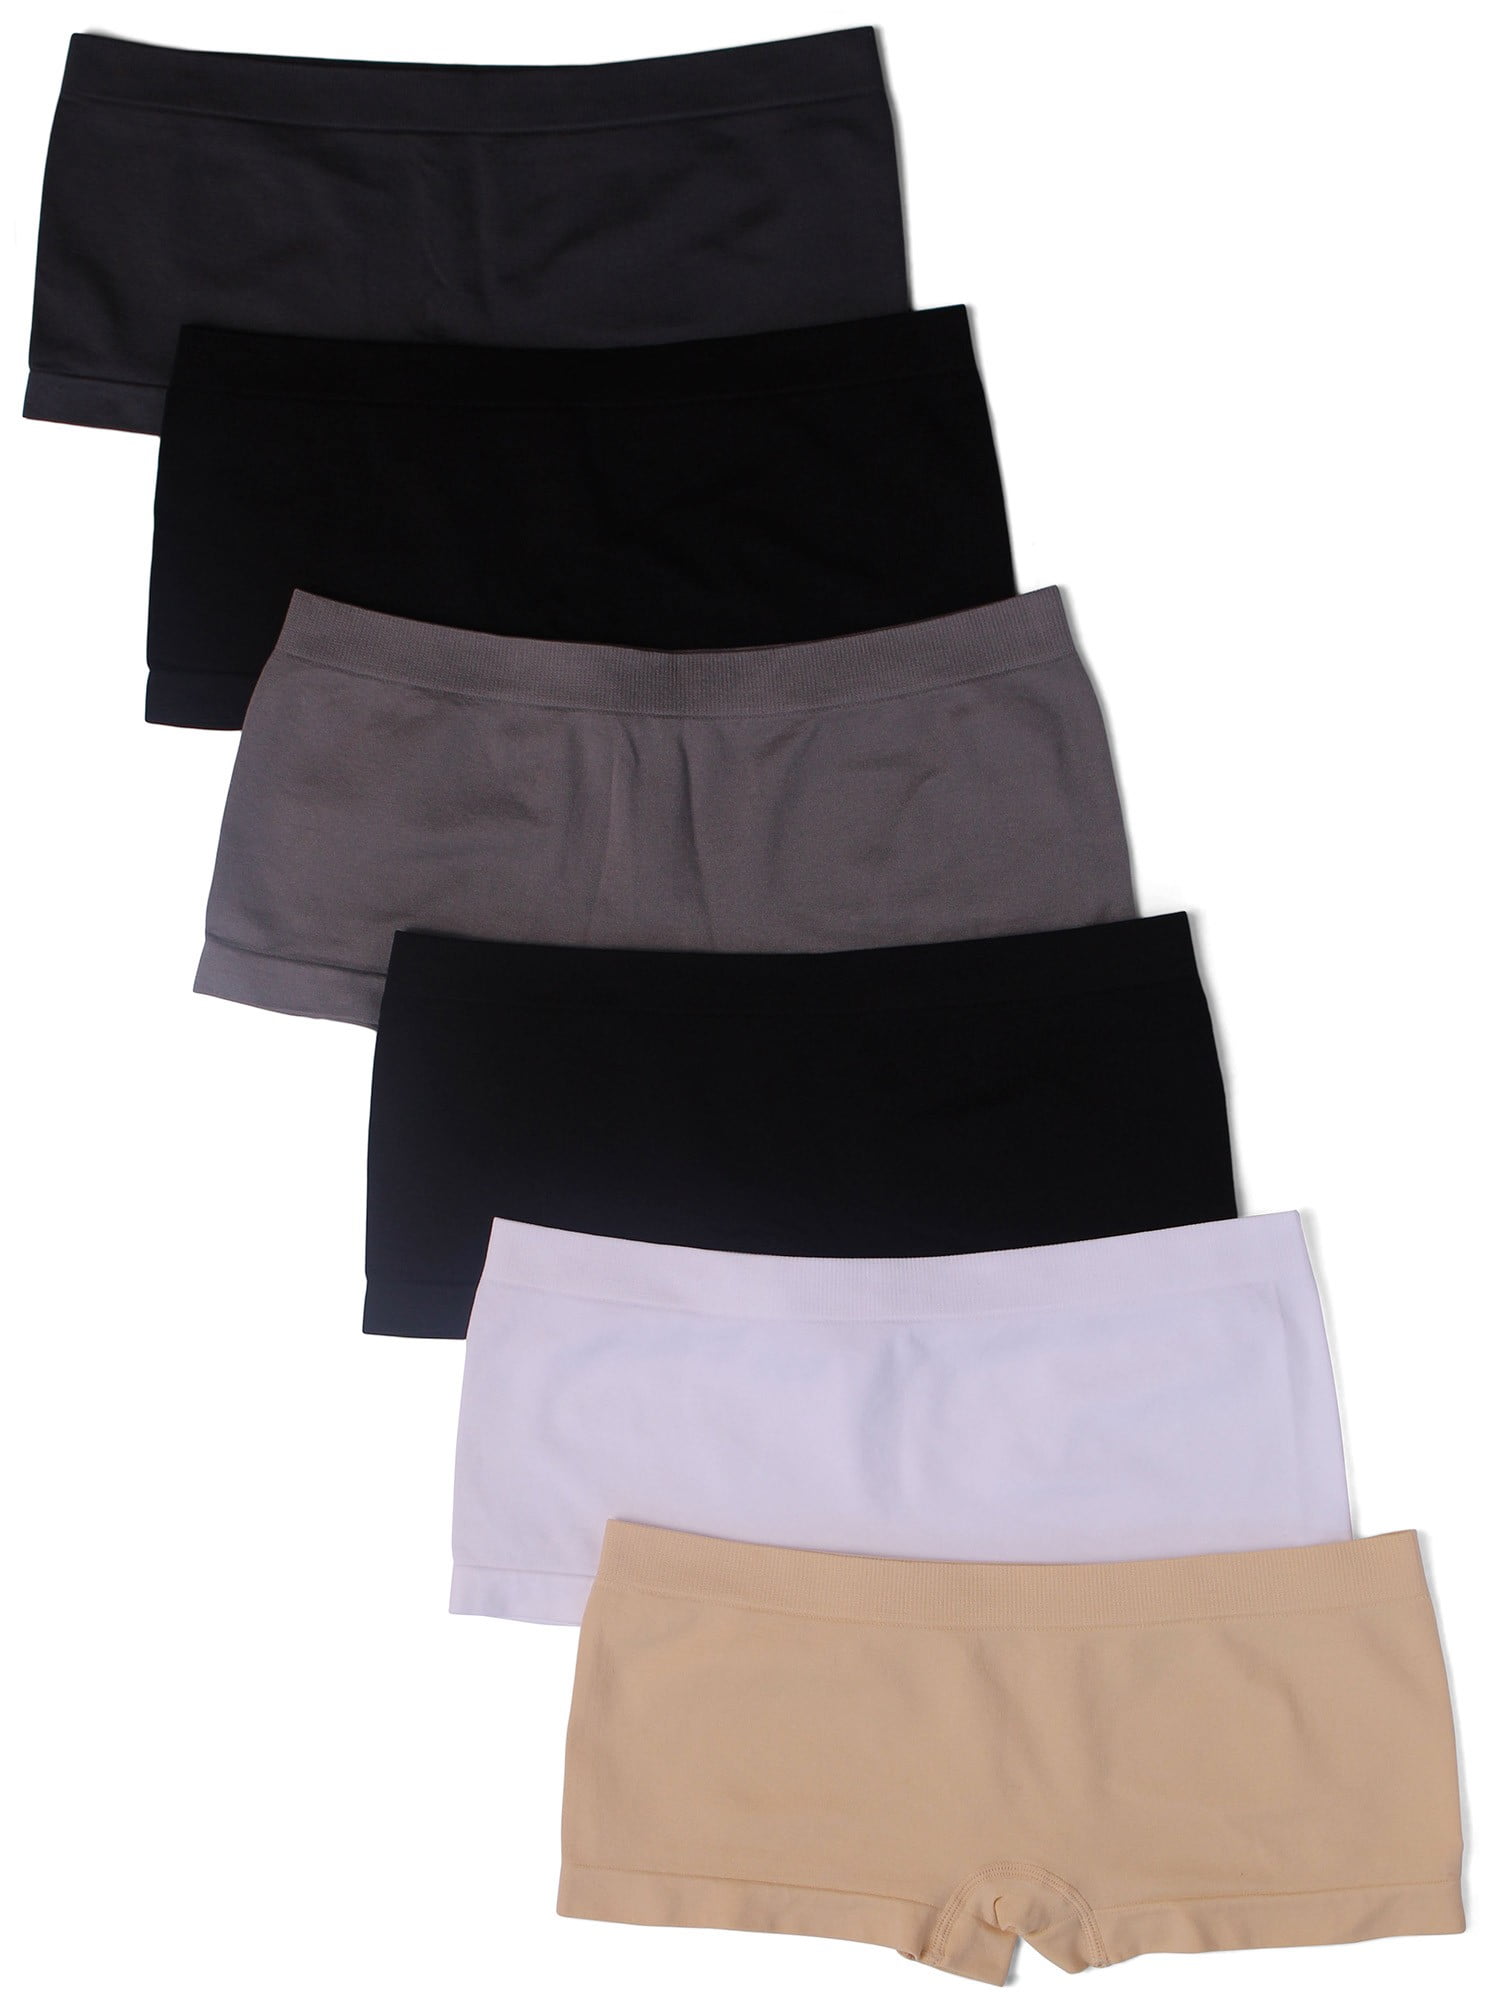 Kalon Women's 6 Pack Nylon Spandex Boyshort Panties (Large, Basics ...